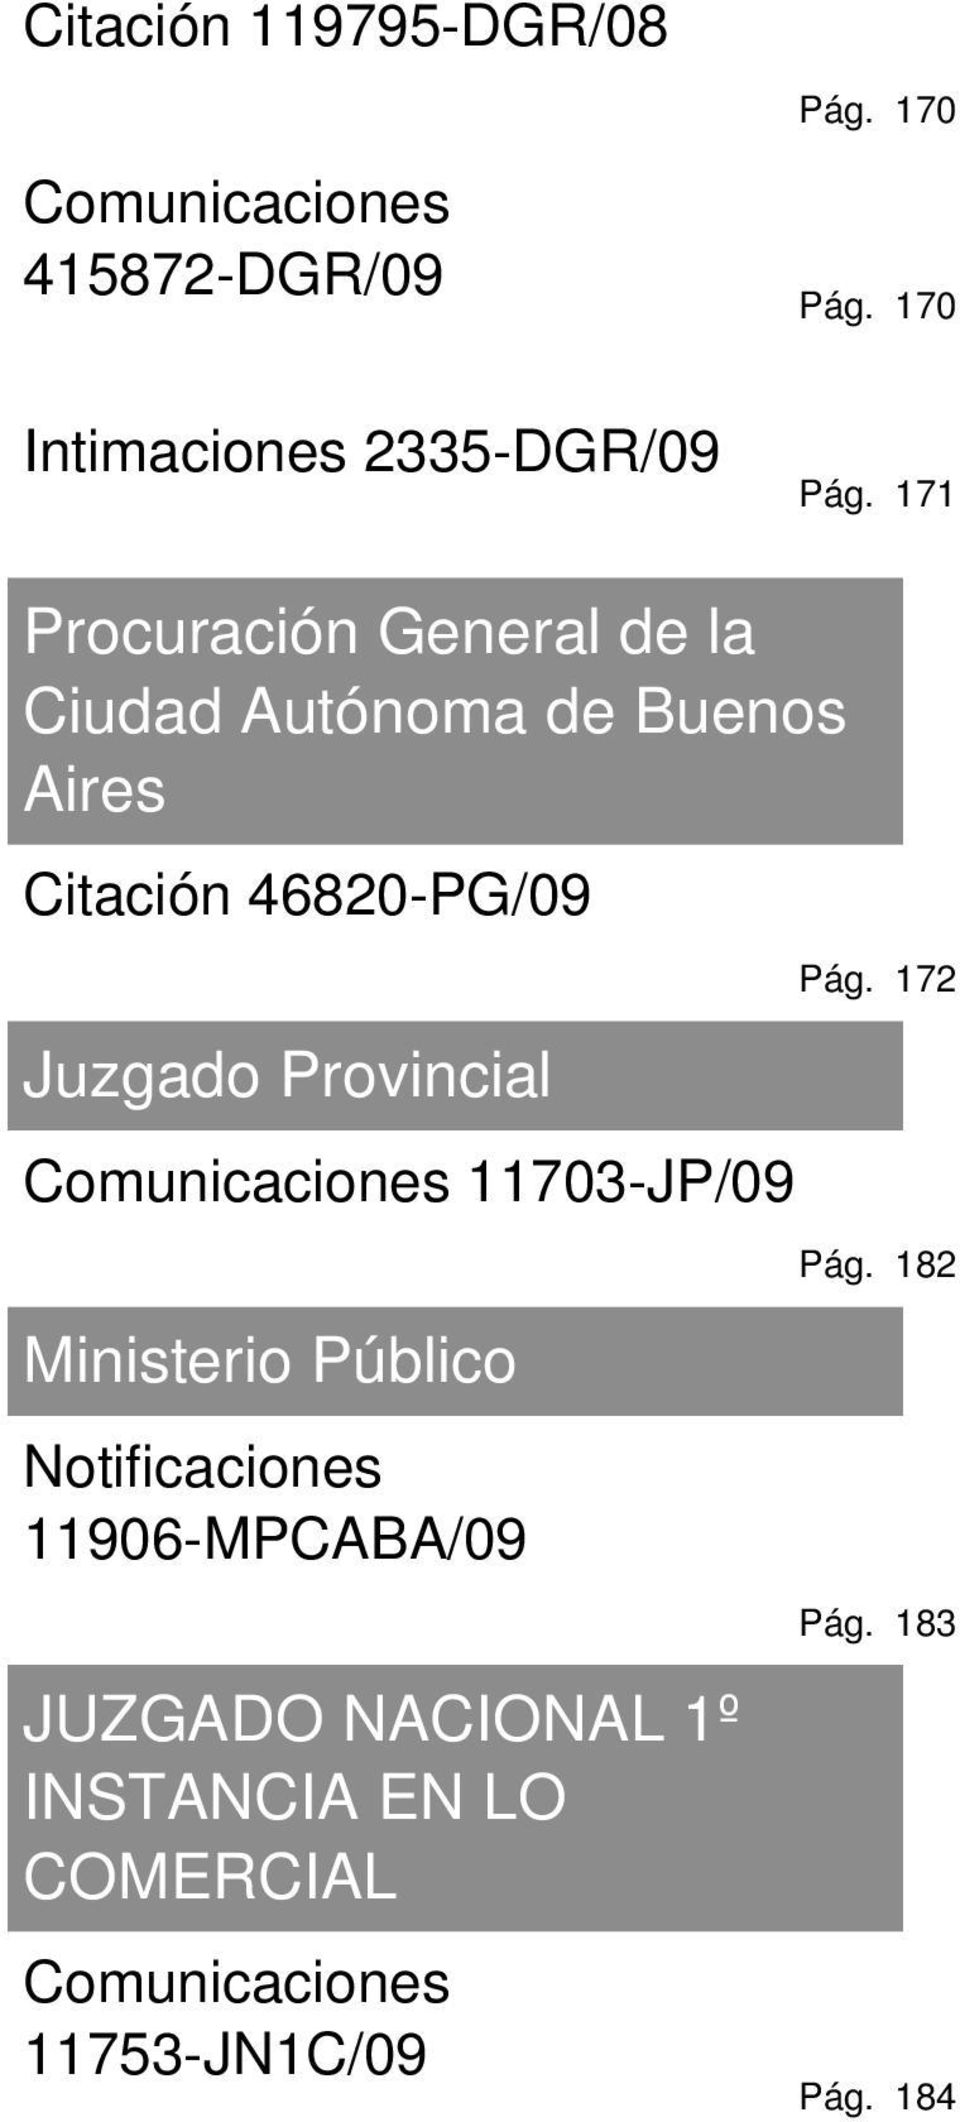 171 Procuración General de la Ciudad Autónoma de Buenos Aires Citación 46820-PG/09 Juzgado